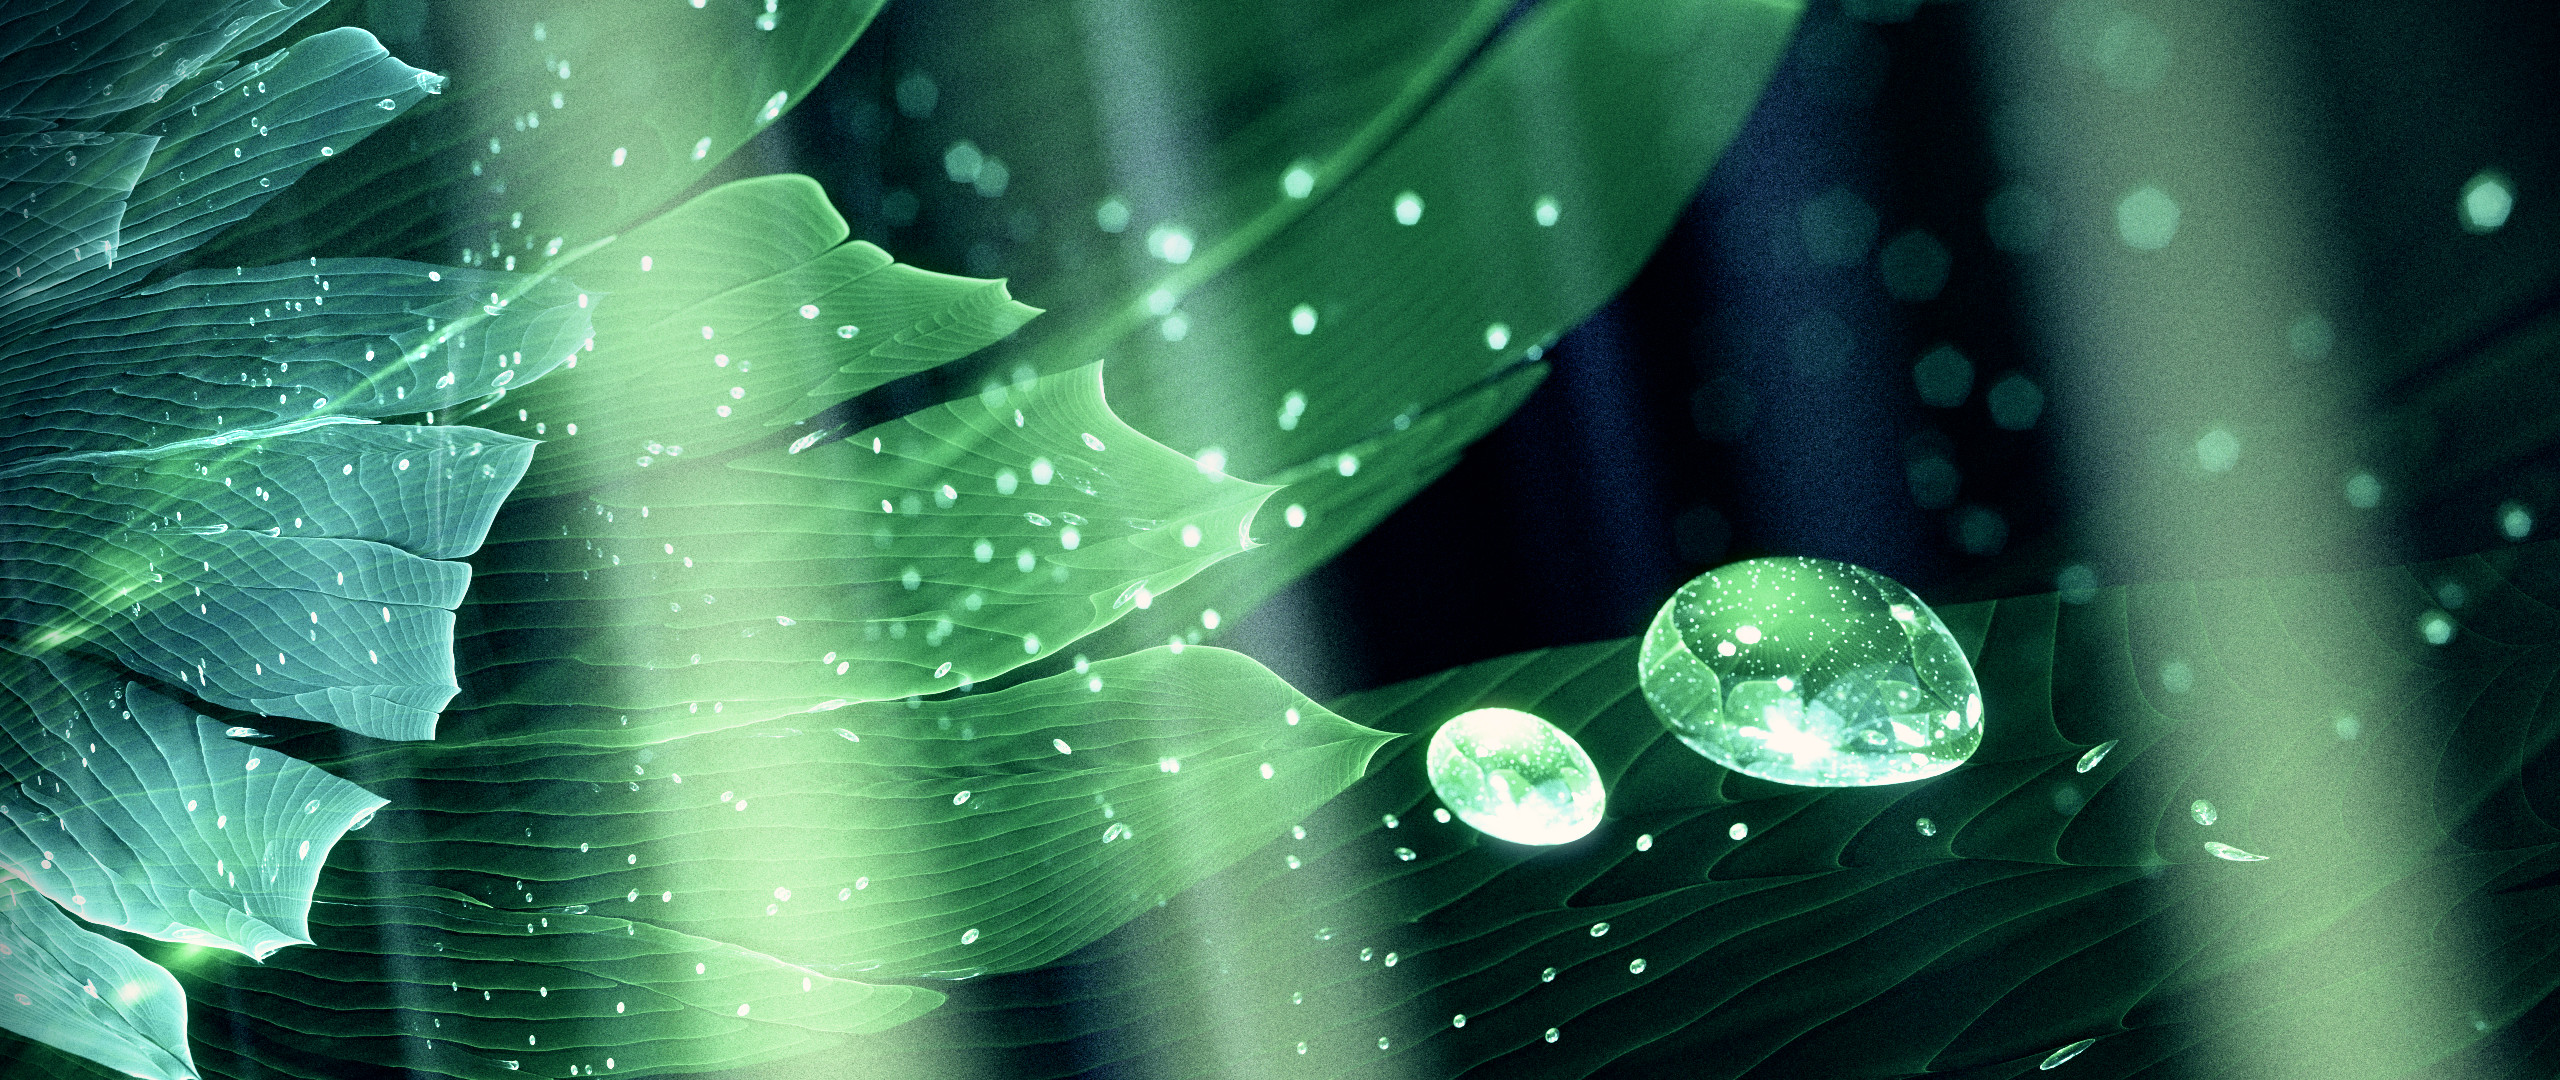 2560x1080 Abstract - Fractal Water Drop Flower Green Digital Digital Art Artistic  Wallpaper